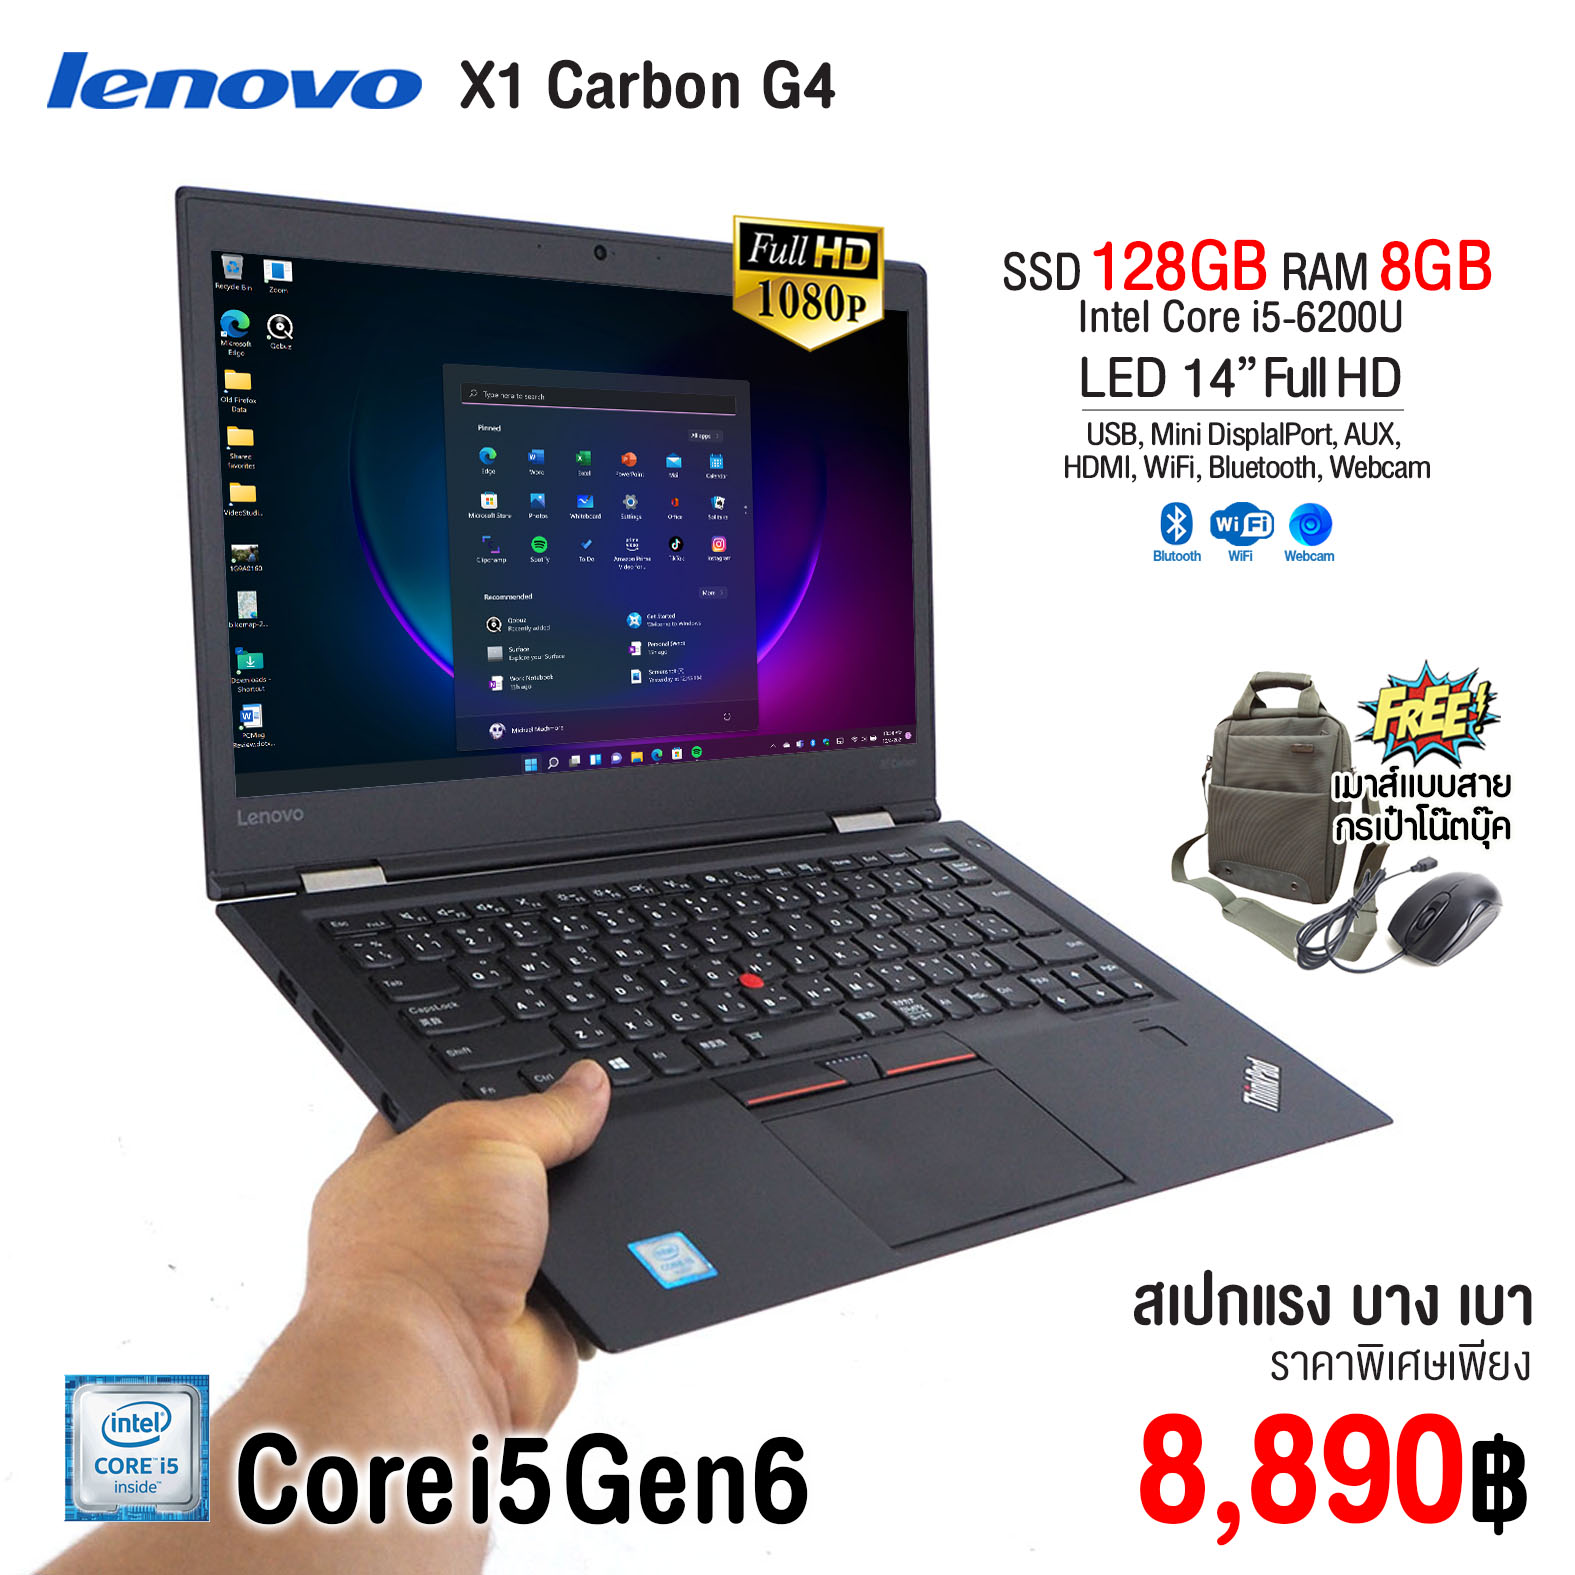 ข้อมูลประกอบของ โน๊ตบุ๊ค Lenovo ThinkPad X1 Carbon Core i5 Gen6 / RAM 8GB / SSD 128GB / จอ 14” Full HD / USB 3.0 / WiFi / Blth / Webcam  สภาพดีมีประกัน by Artechsol